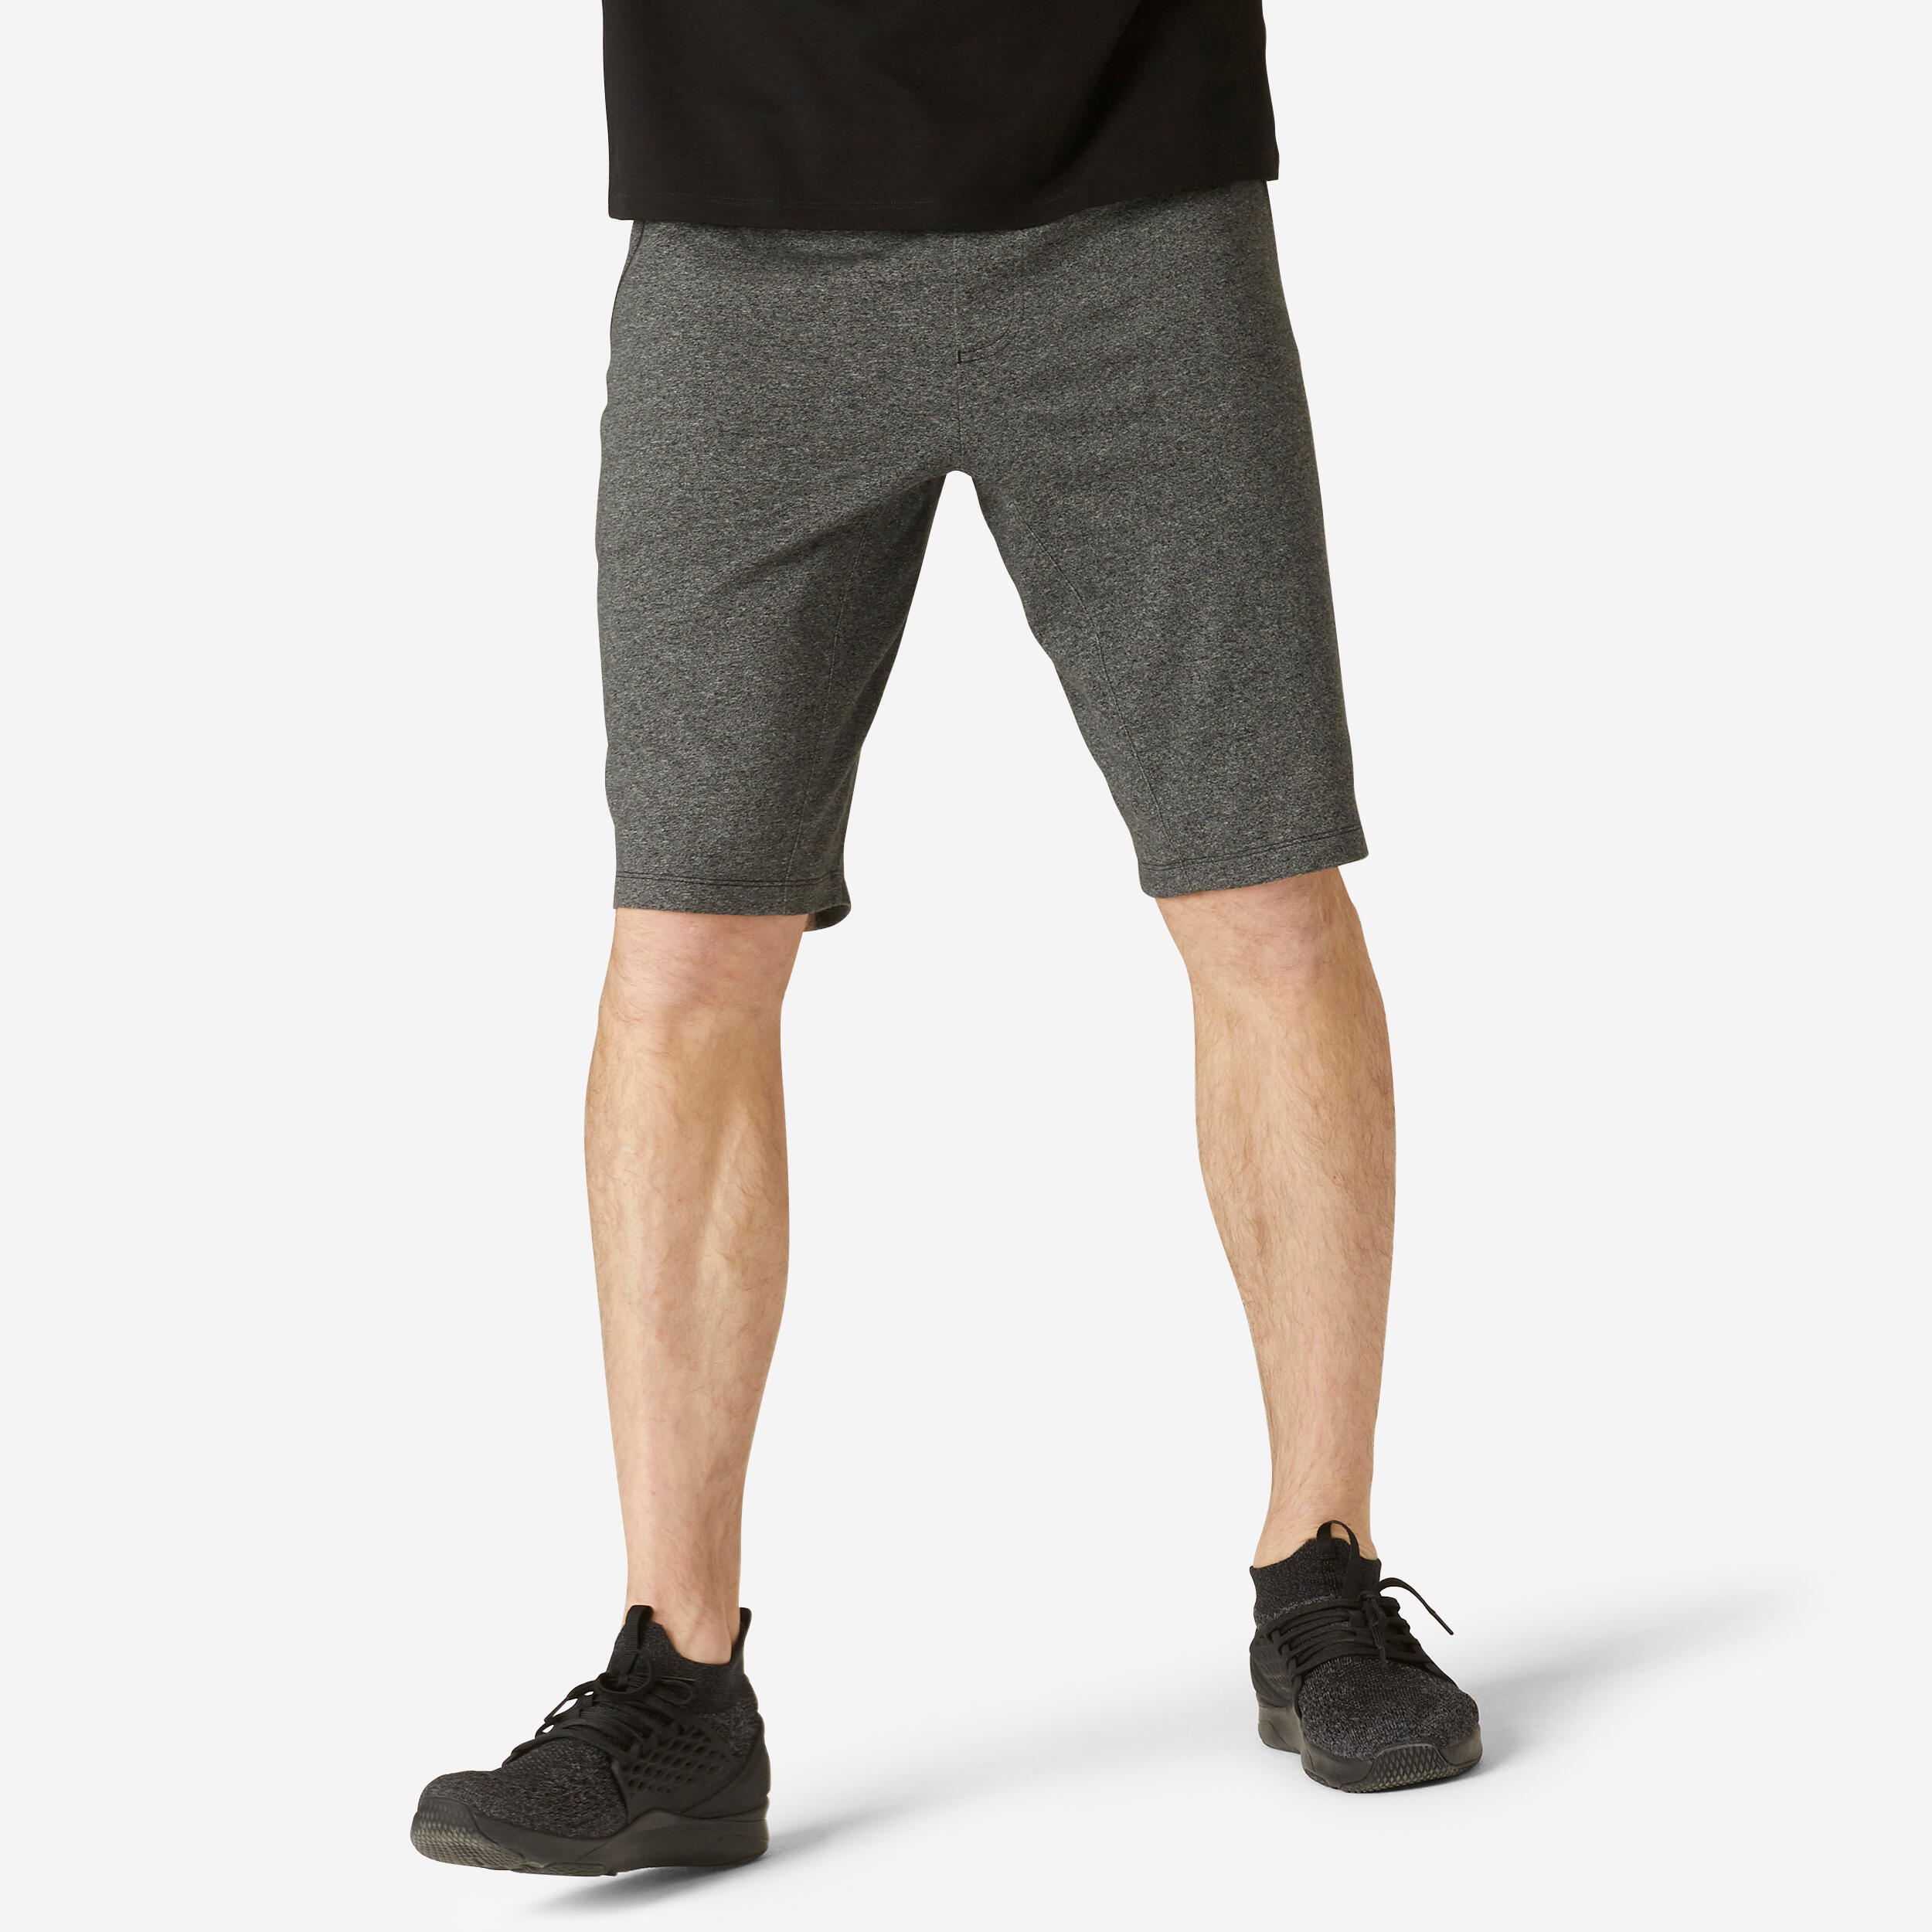 Men’s Fitness Shorts with Zipped Pockets - 520 Grey - DOMYOS